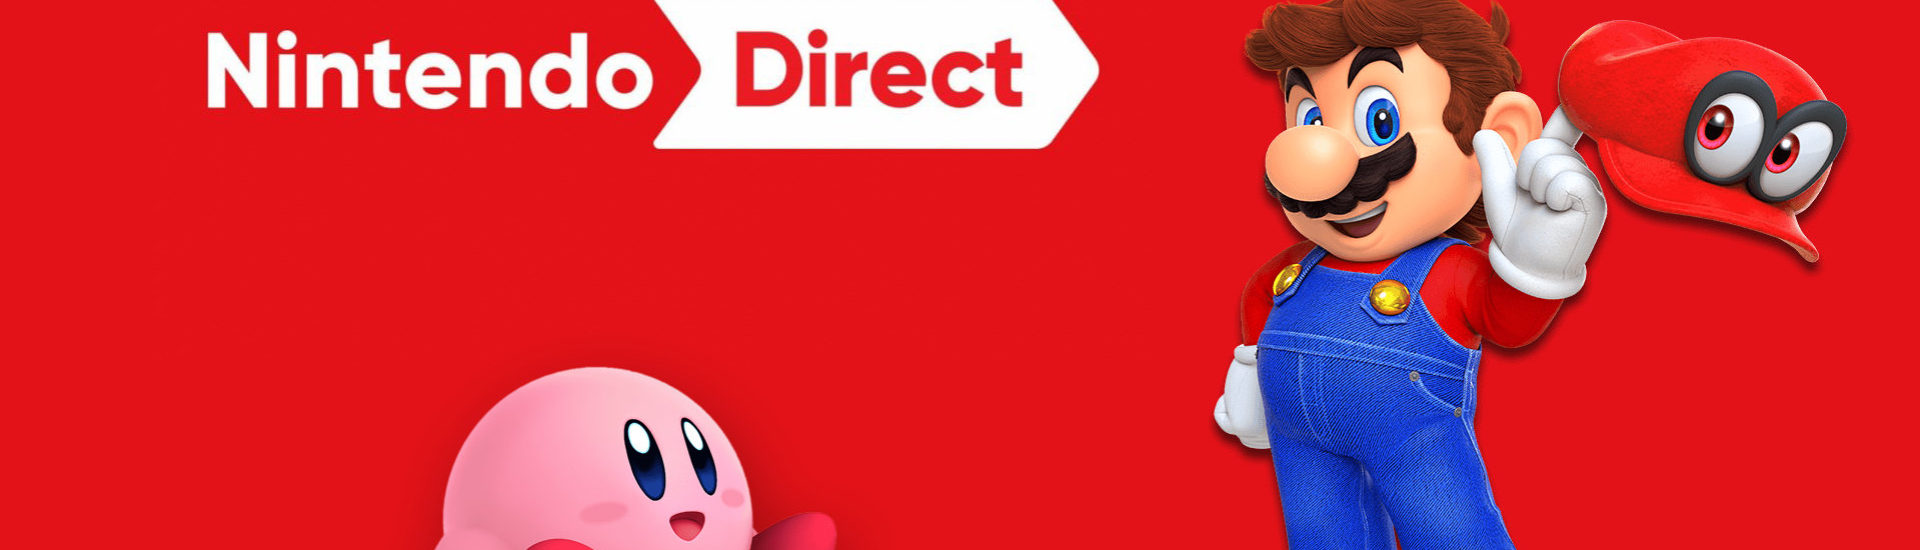 Nintendo Direct startet heute um 23 Uhr